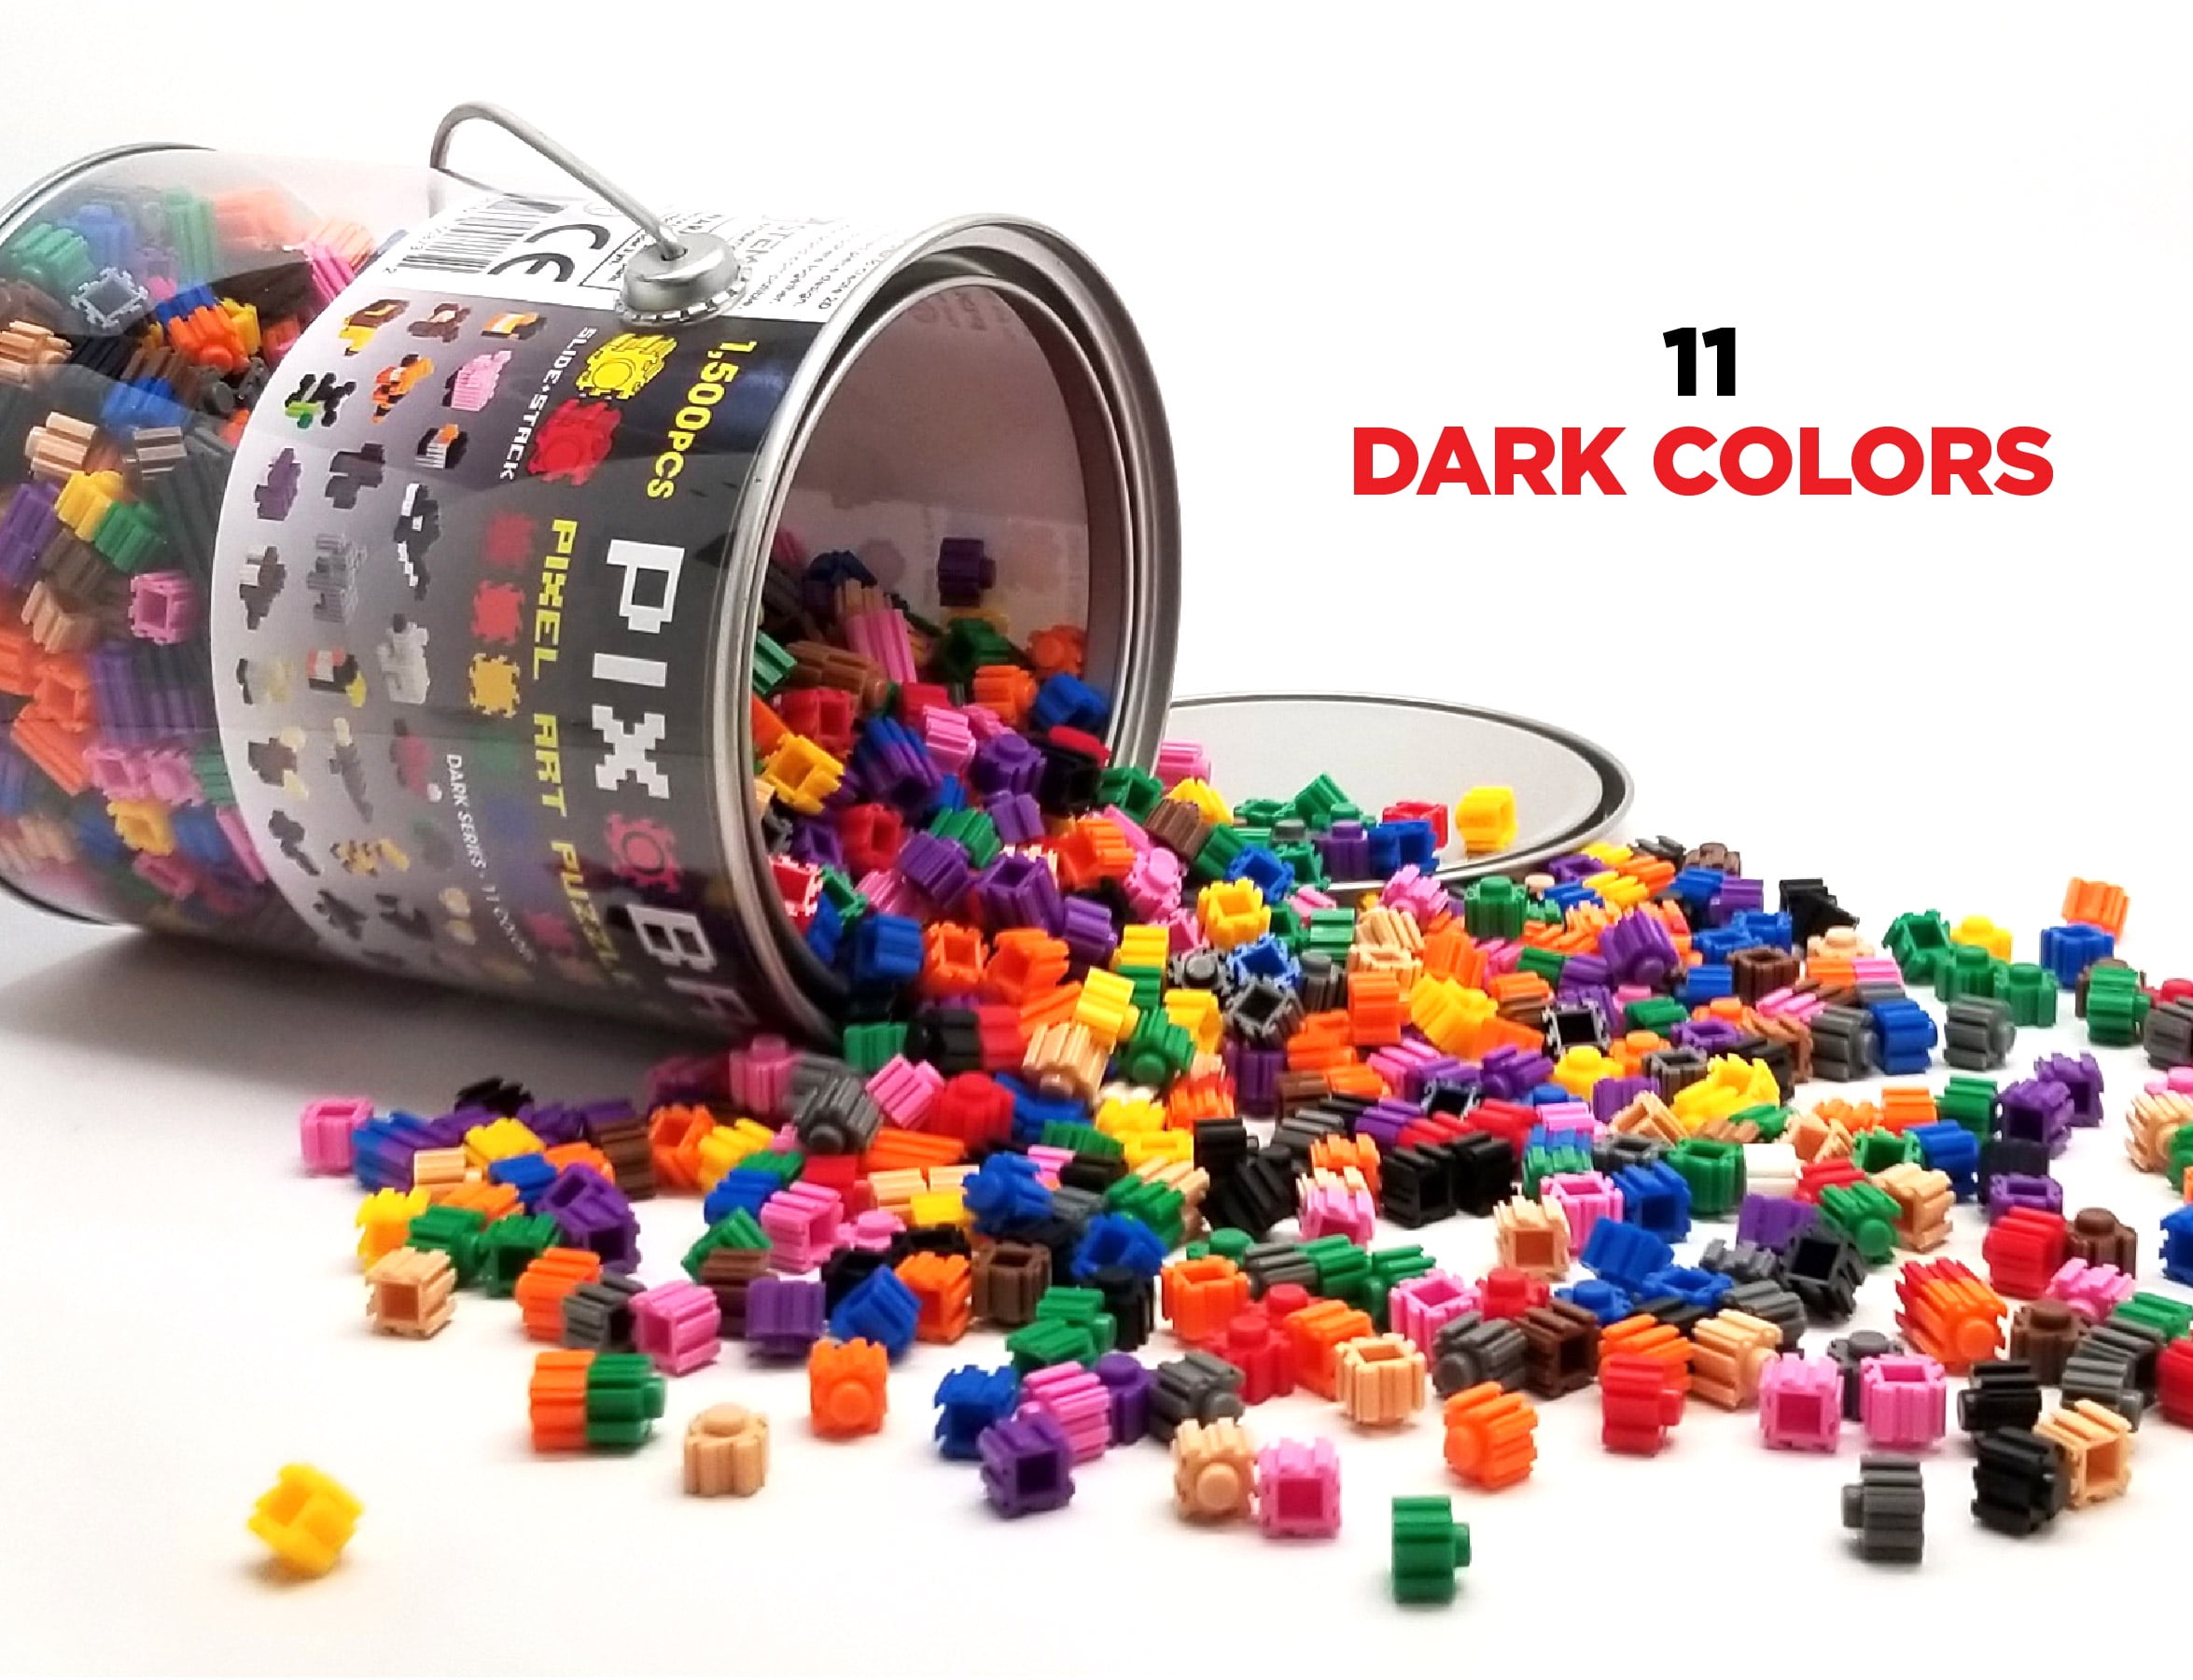  Pix Brix Pixel Art Puzzle Bricks – 6,000 Piece Pixel Art  Container, 12 Color Light Palette – Interlocking Building Bricks, Create 2D  and 3D Builds Without Water or Glue – Stem